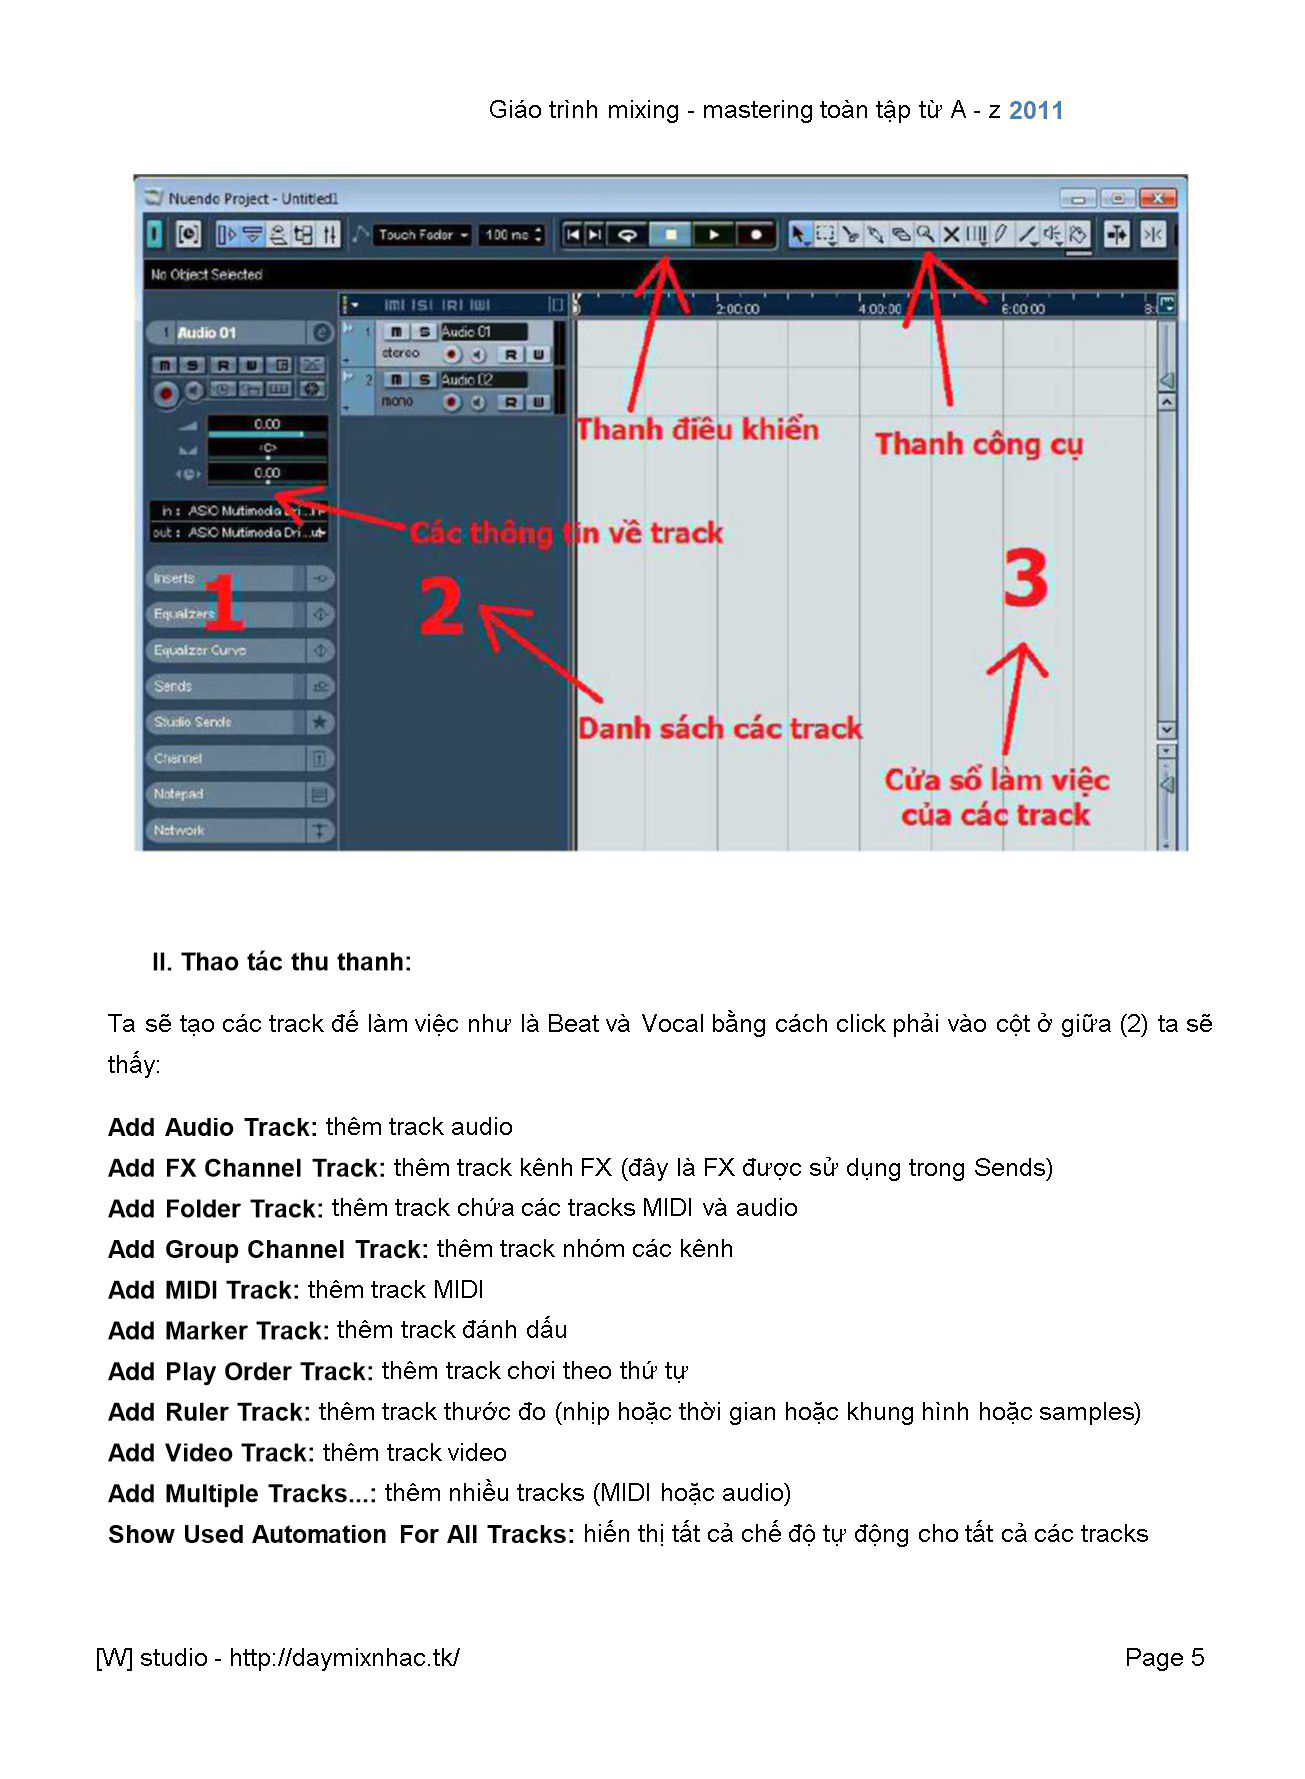 Giáo trình Mixing - Mastering toàn tập trang 5